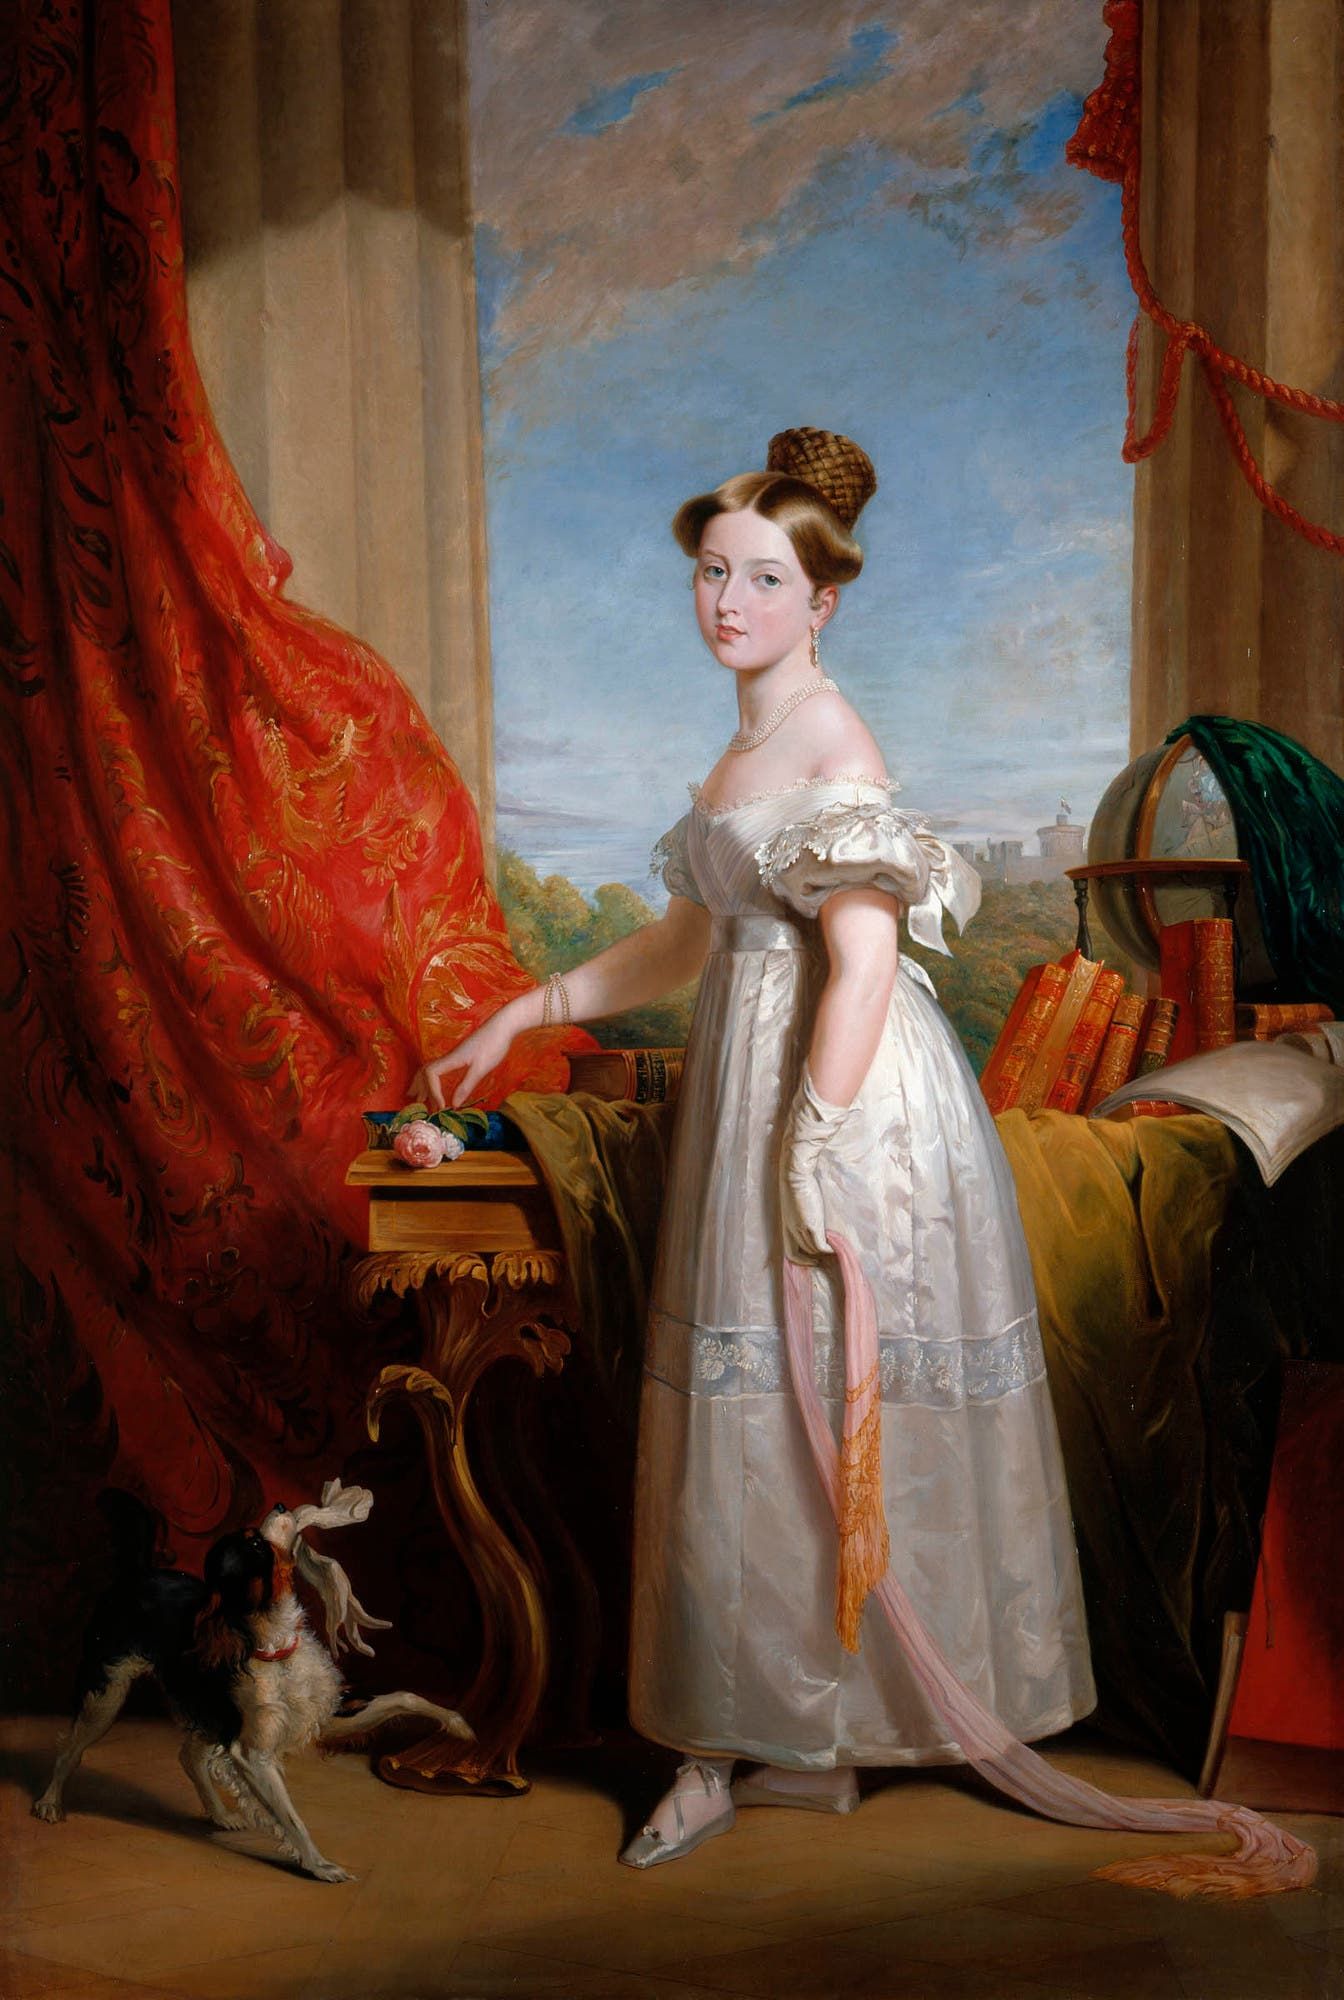 لوحة تجسد الملكة فكتوريا عام 1833